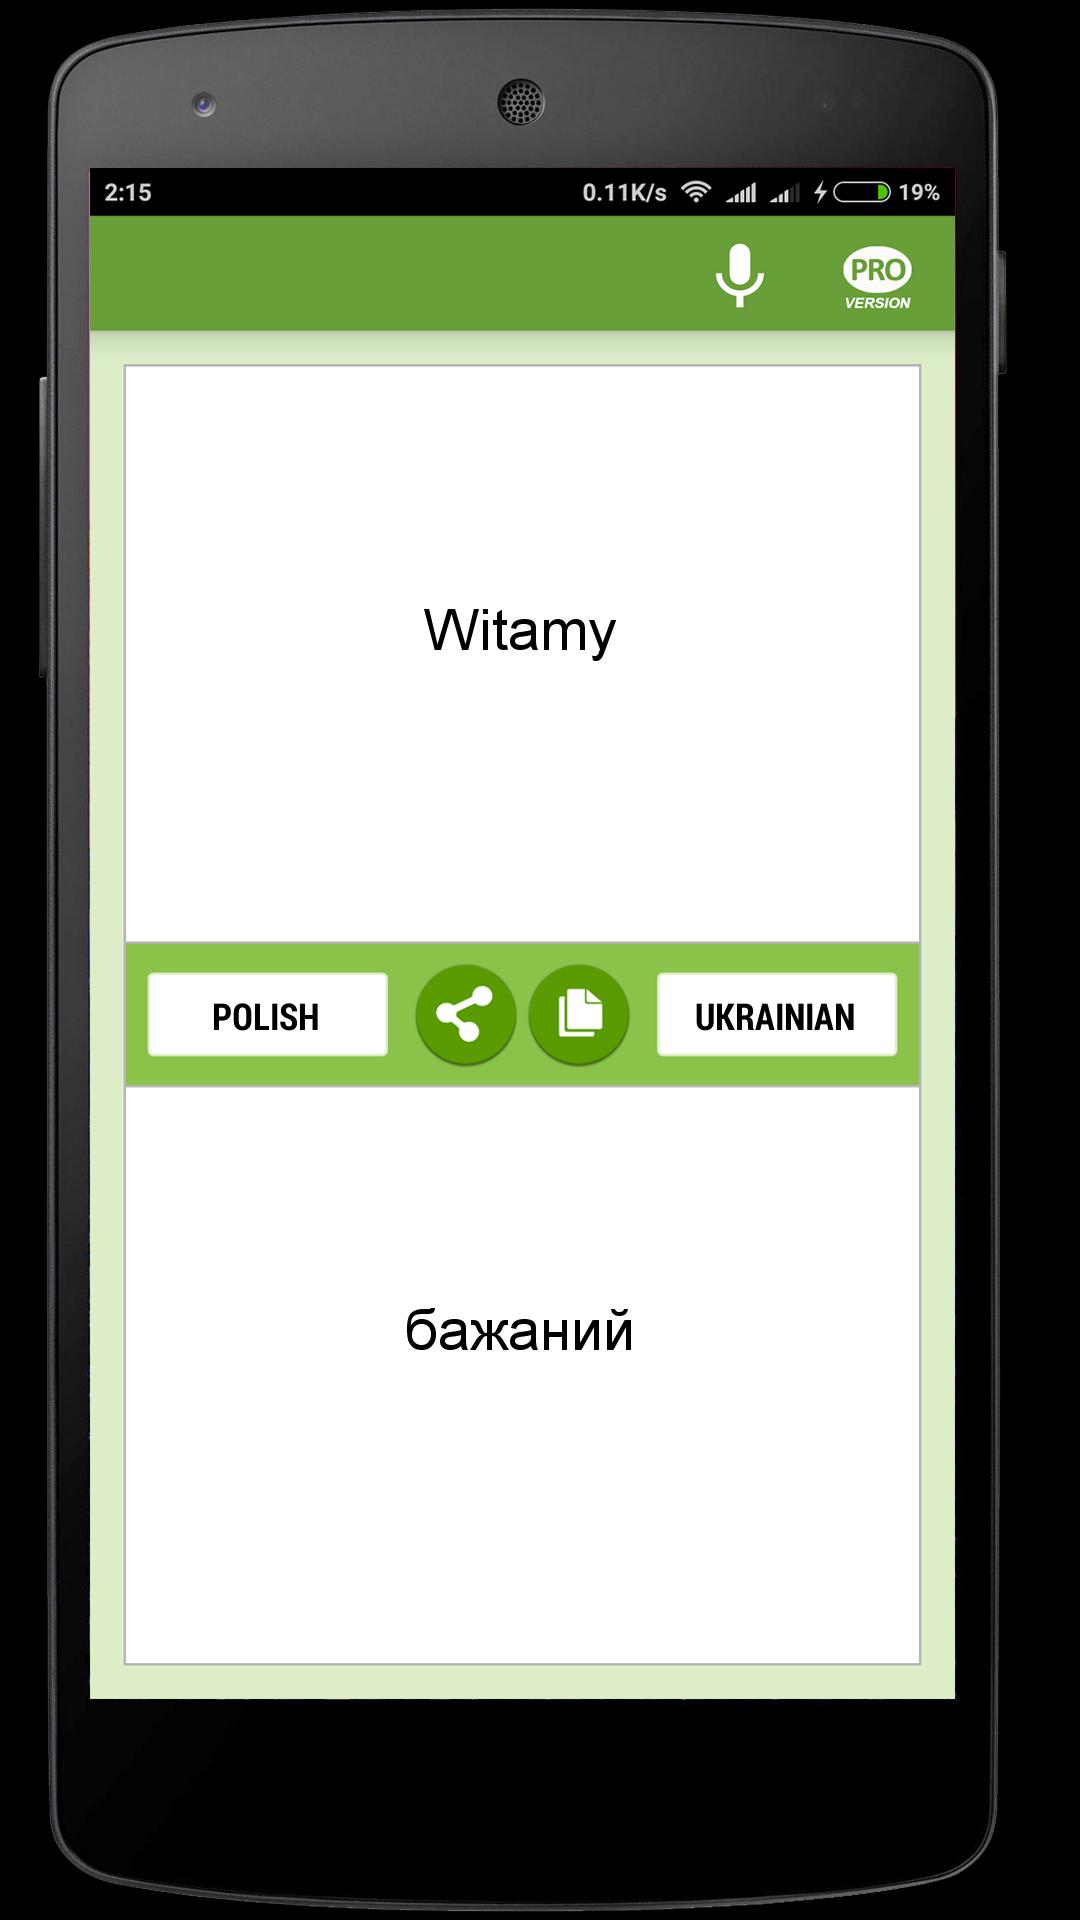 Tłumacz polsko-ukraiński for Android - APK Download